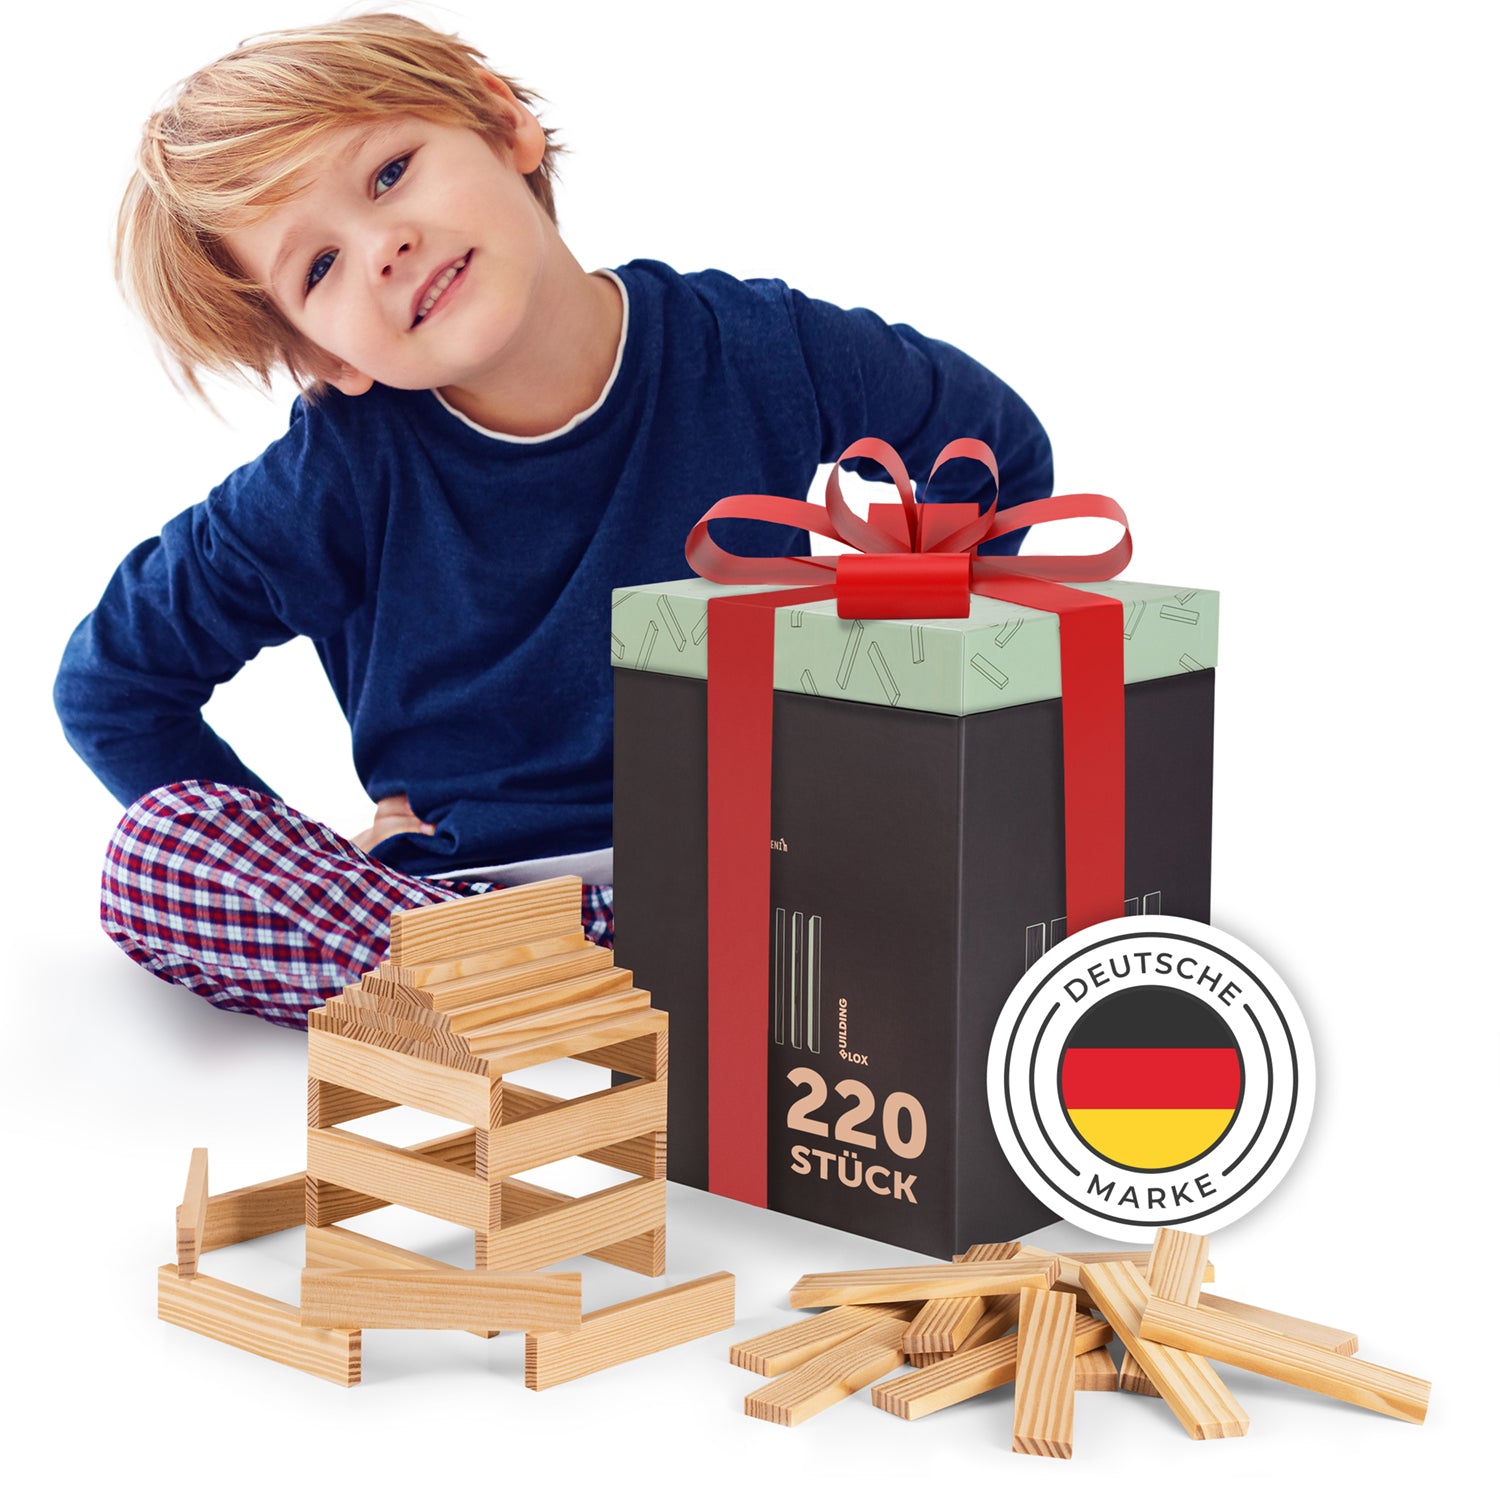 Junge mit blauem Oberteil und karierten Hosen sitzt neben einem Geschenk und einer Konstruktion aus Holzklötzen, Markenzeichen mit deutscher Flagge ist sichtbar.